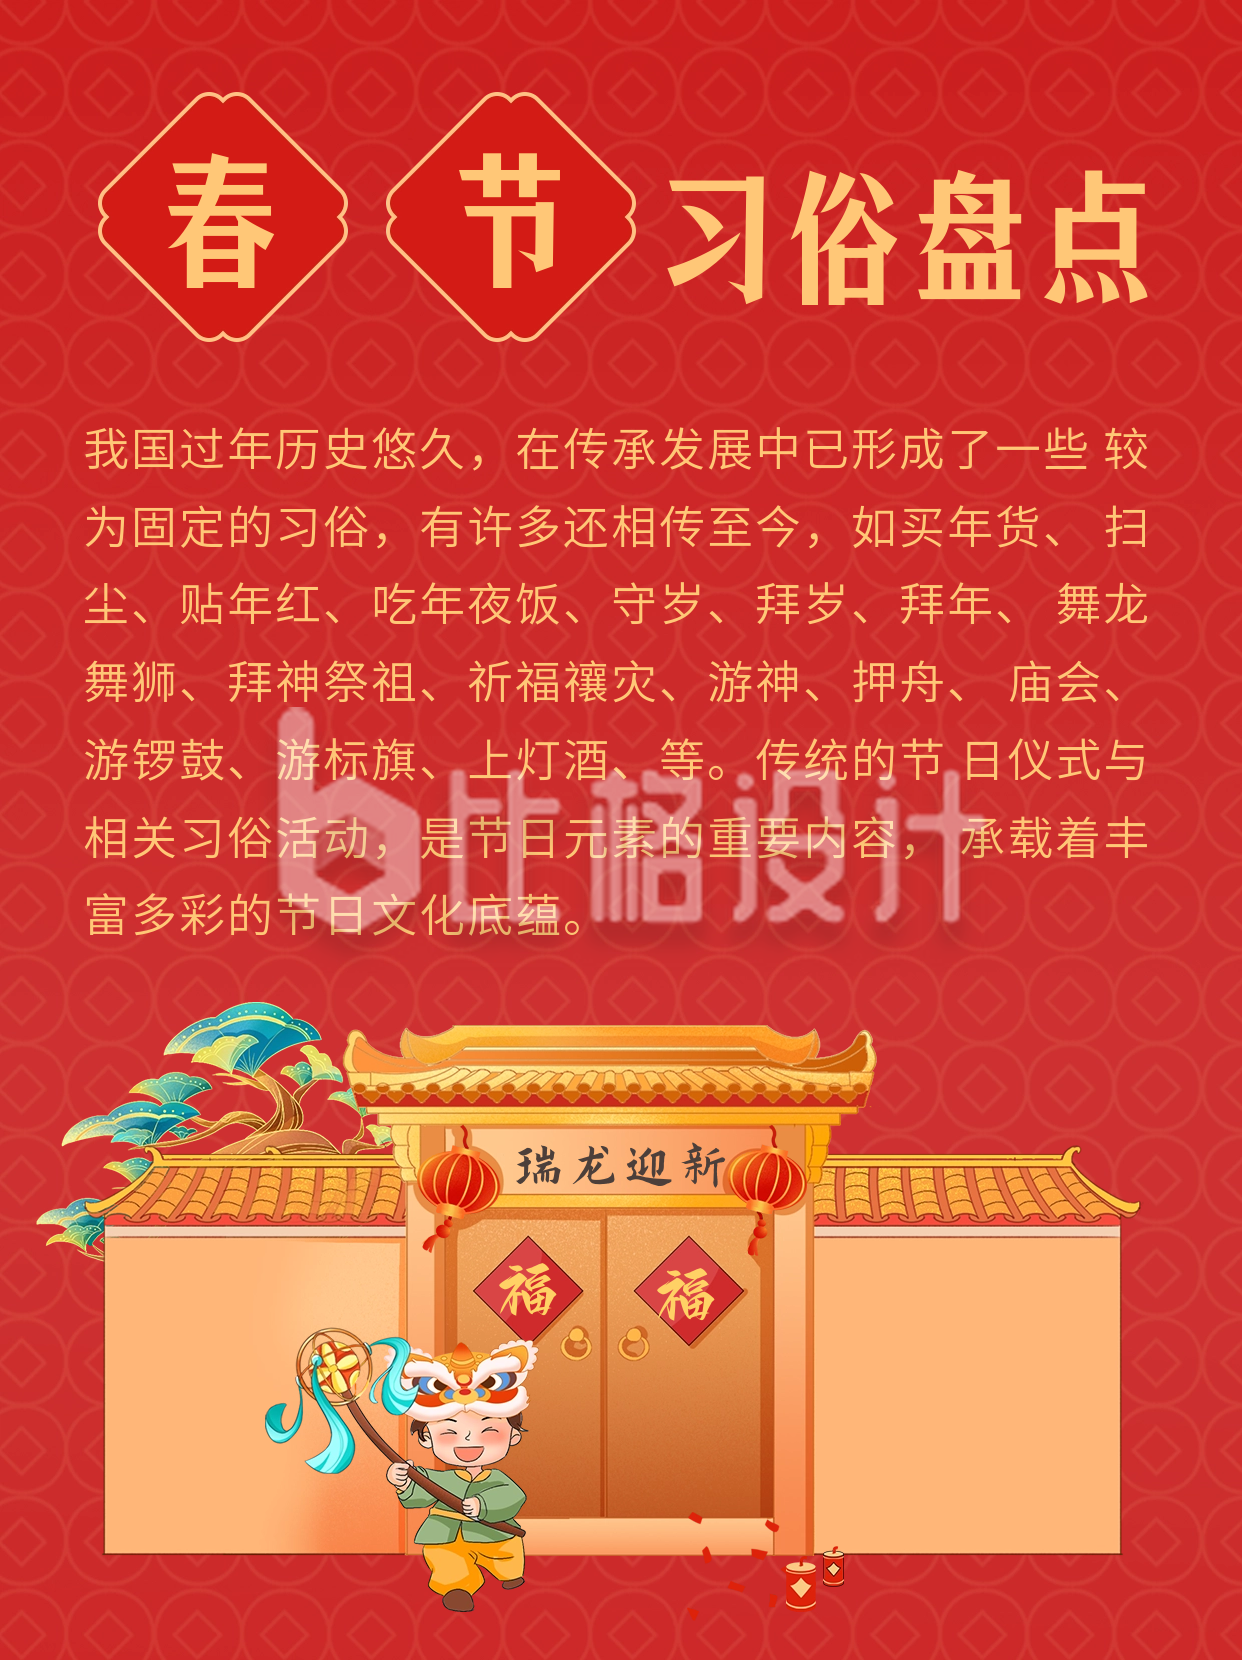 手绘趣味春节习俗知识科普小红书封面图